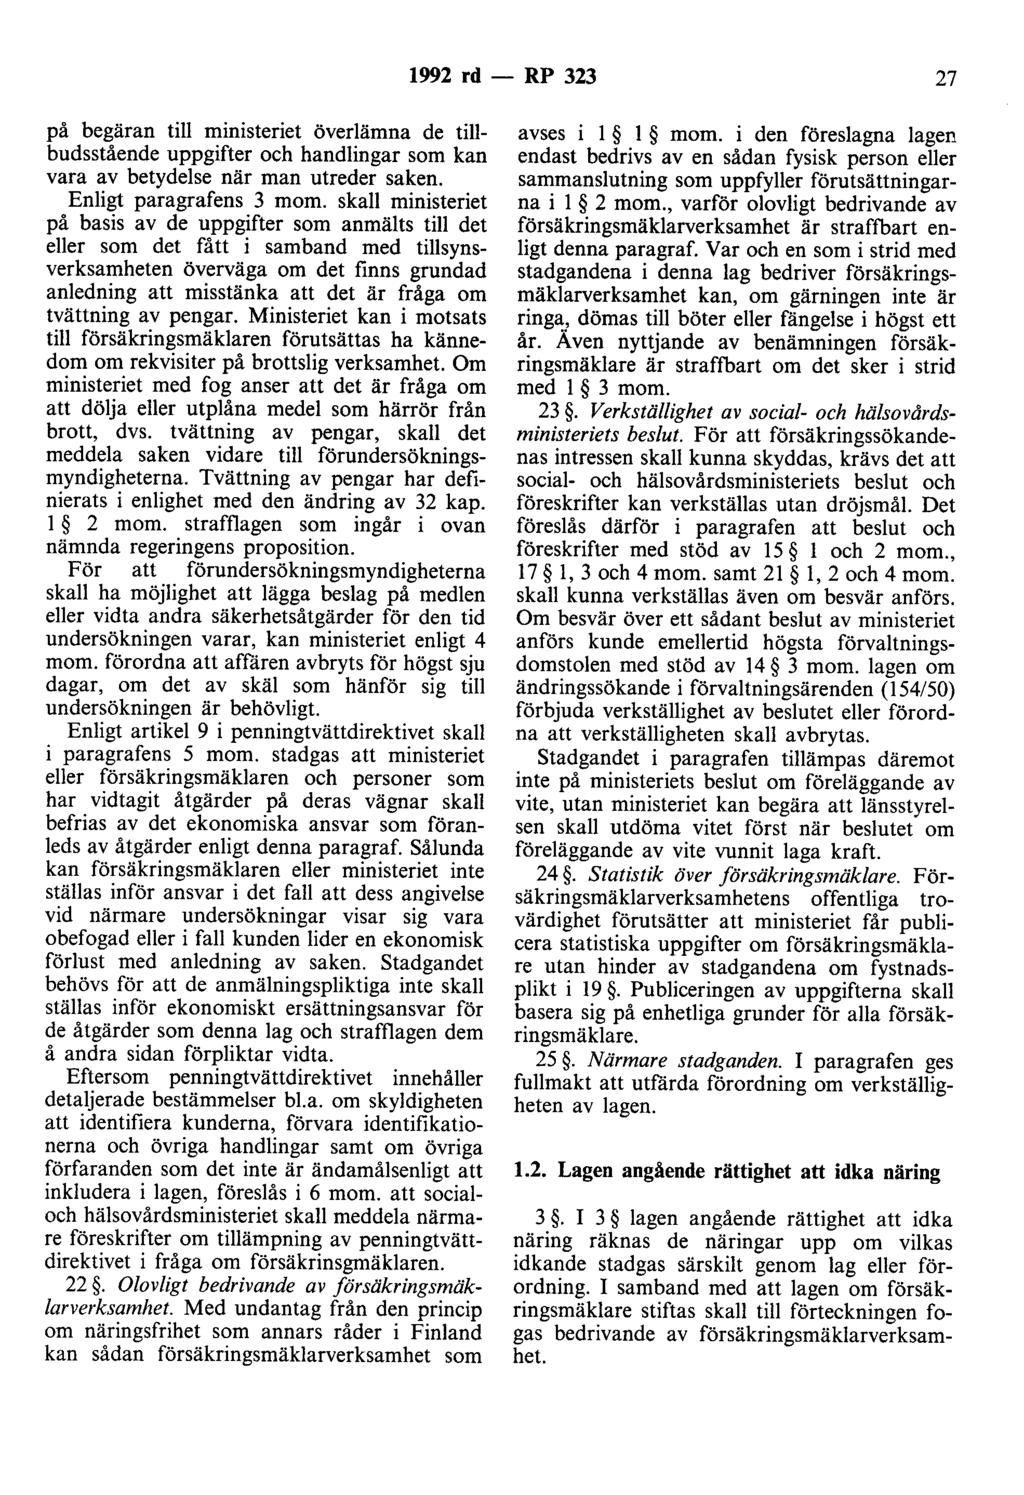 1992 rd - RP 323 27 på begäran till ministeriet överlämna de tillbudsstående uppgifter och handlingar som kan vara av betydelse när man utreder saken. Enligt paragrafens 3 mom.